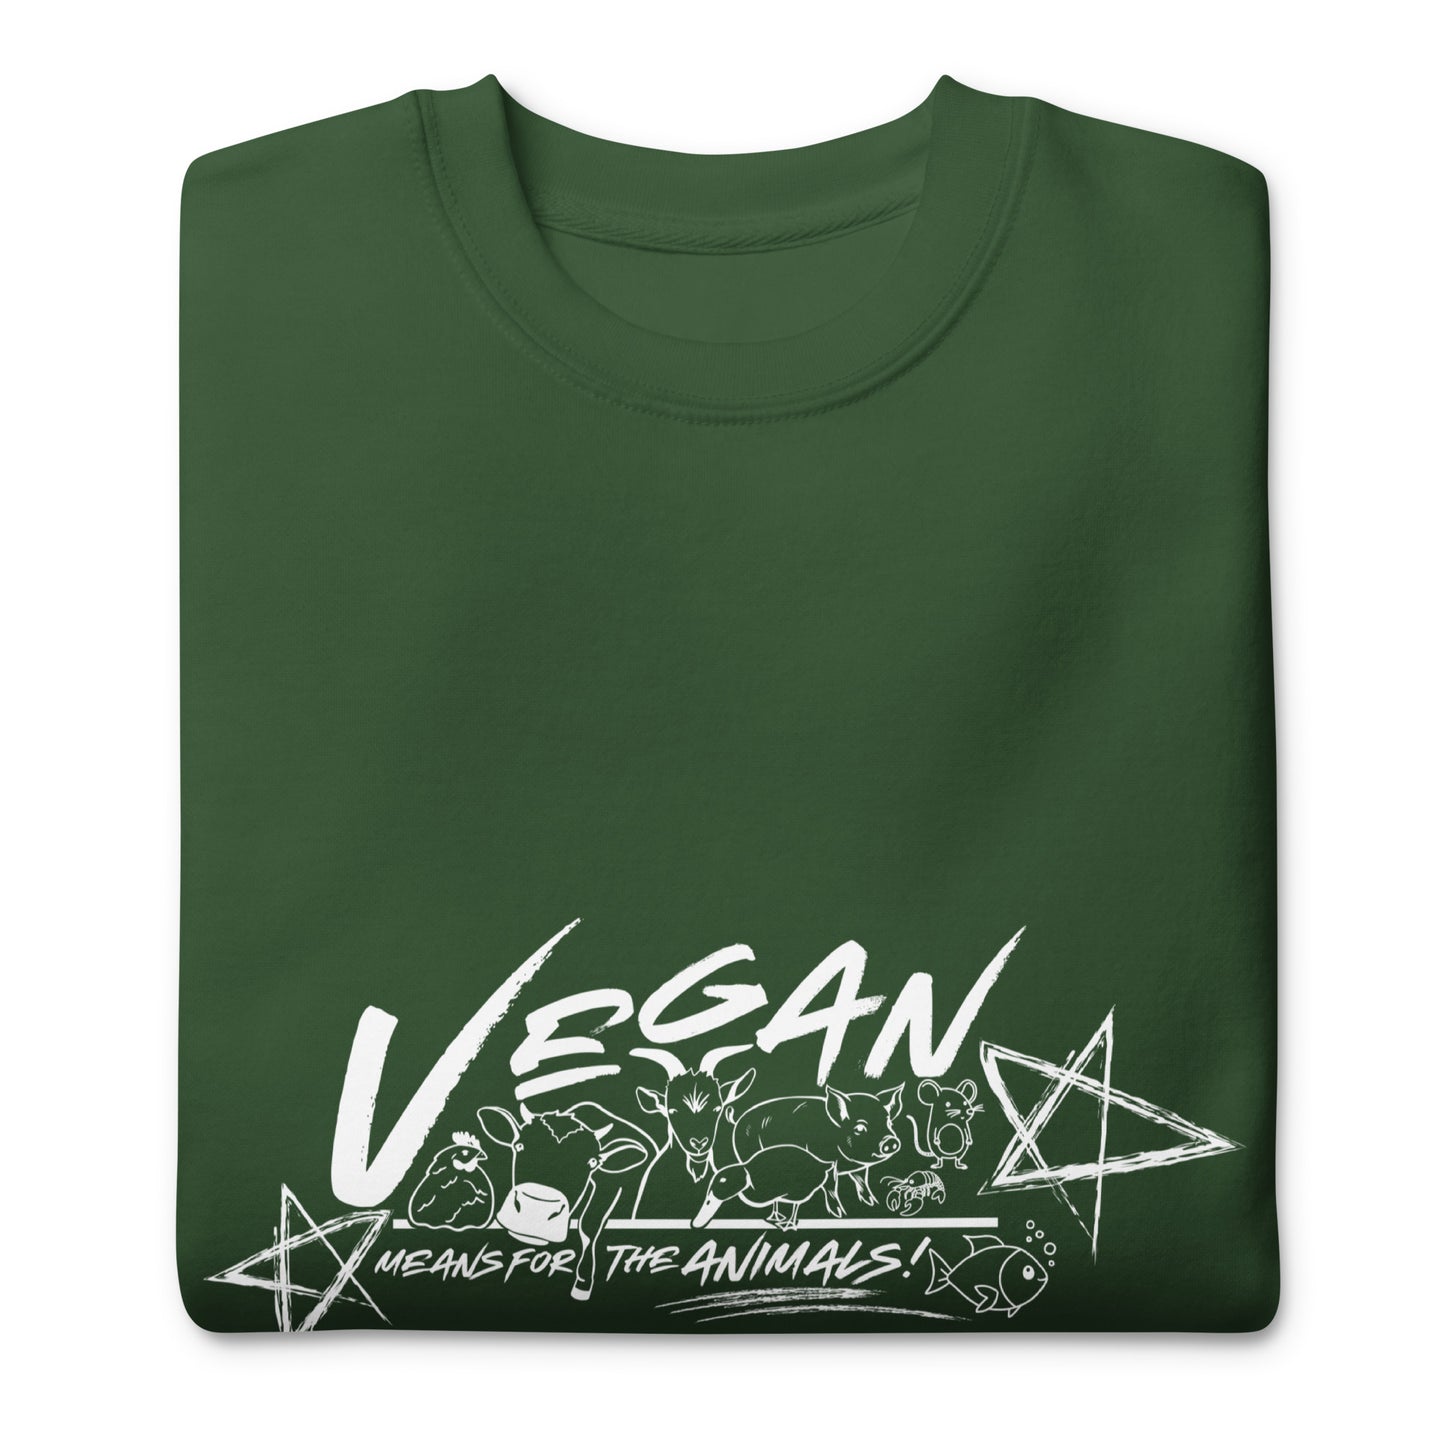 VEGAN " Means For The ANIMALS! " Unisex Premium Sweatshirt